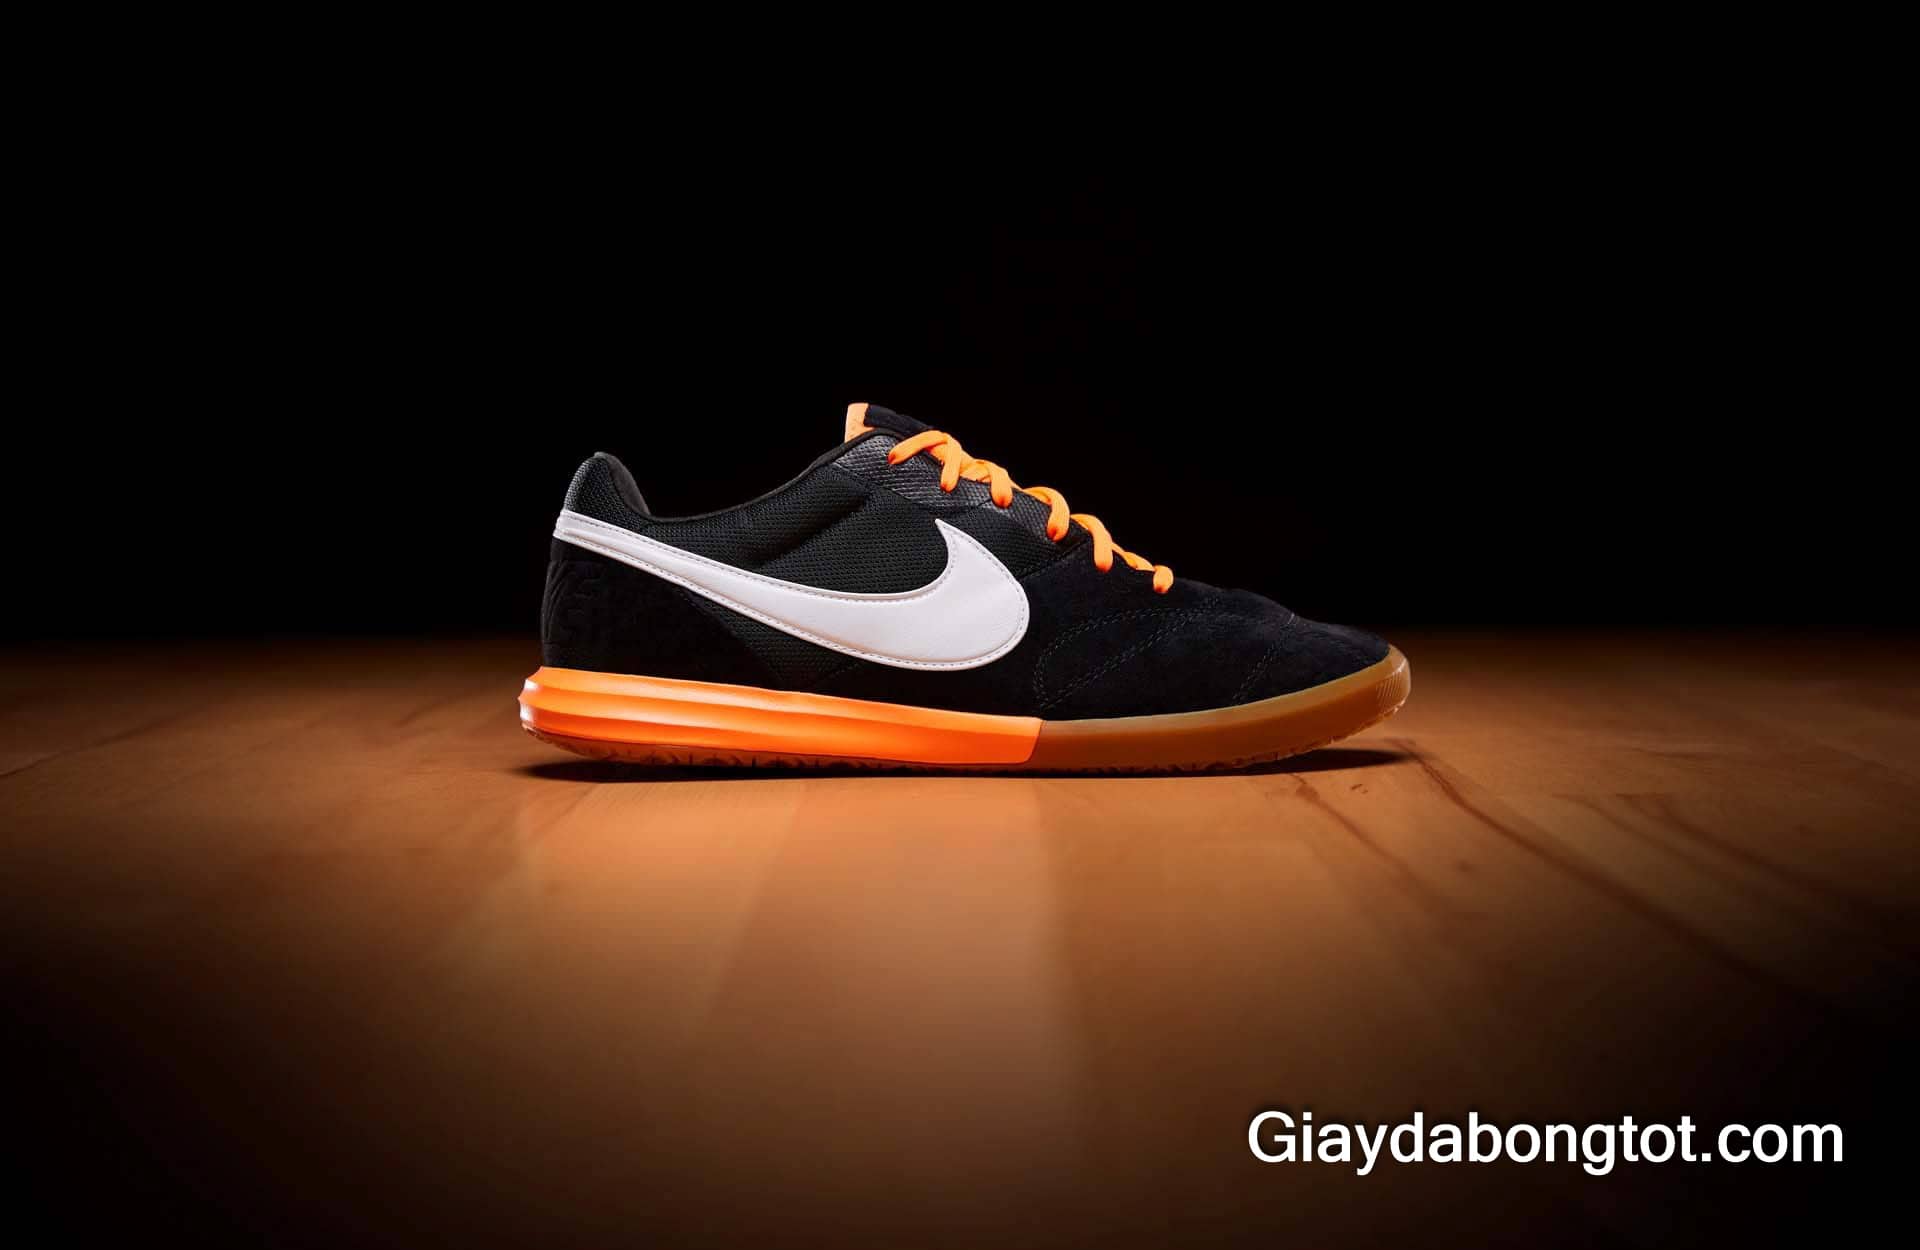 Giày đá bóng đế bằng Nike Premier 2 Sala được giới trẻ yêu thích sử dụng trên đường phố